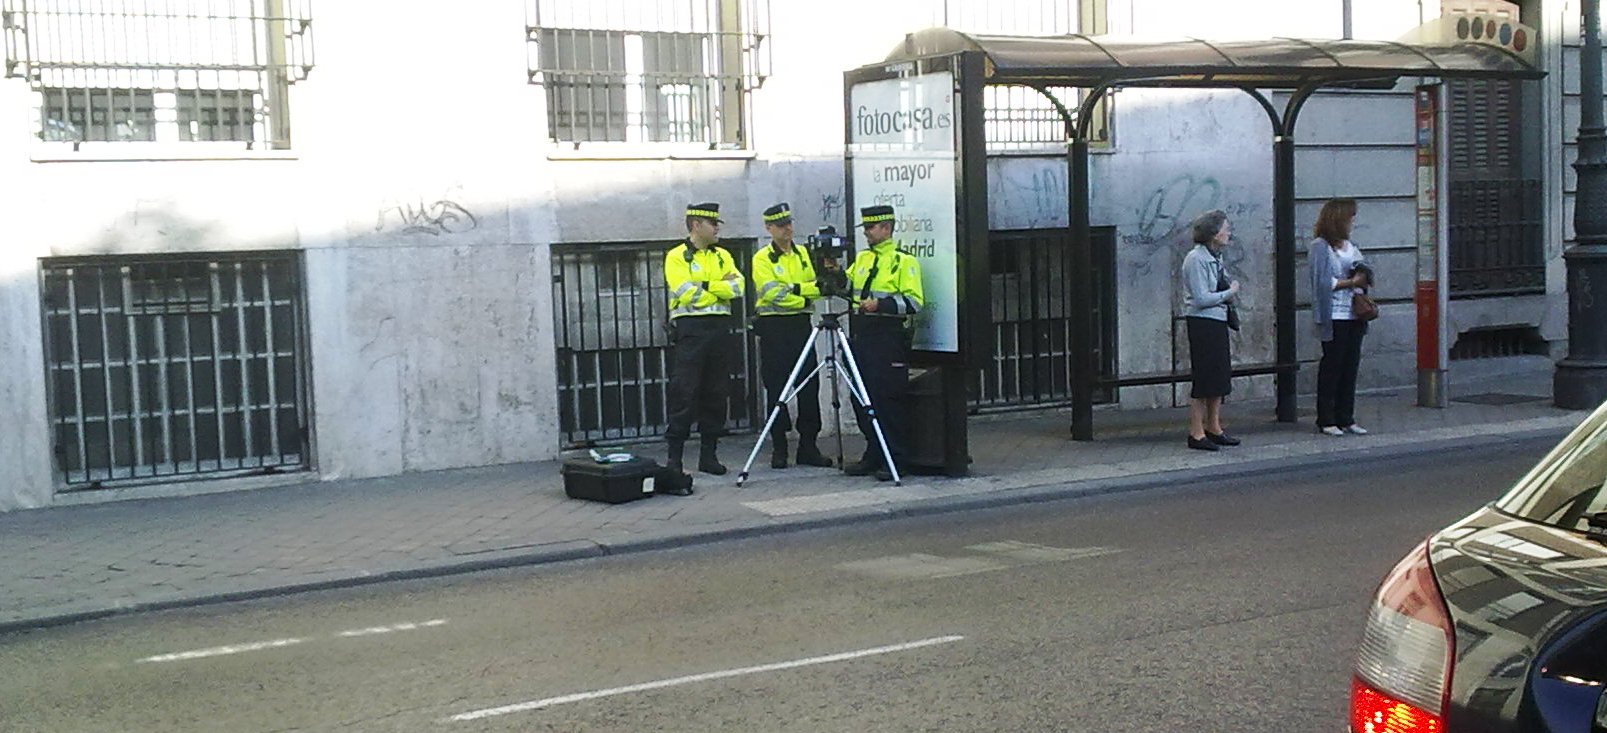 Guardias camuflados tras parada de bus y radar en mano